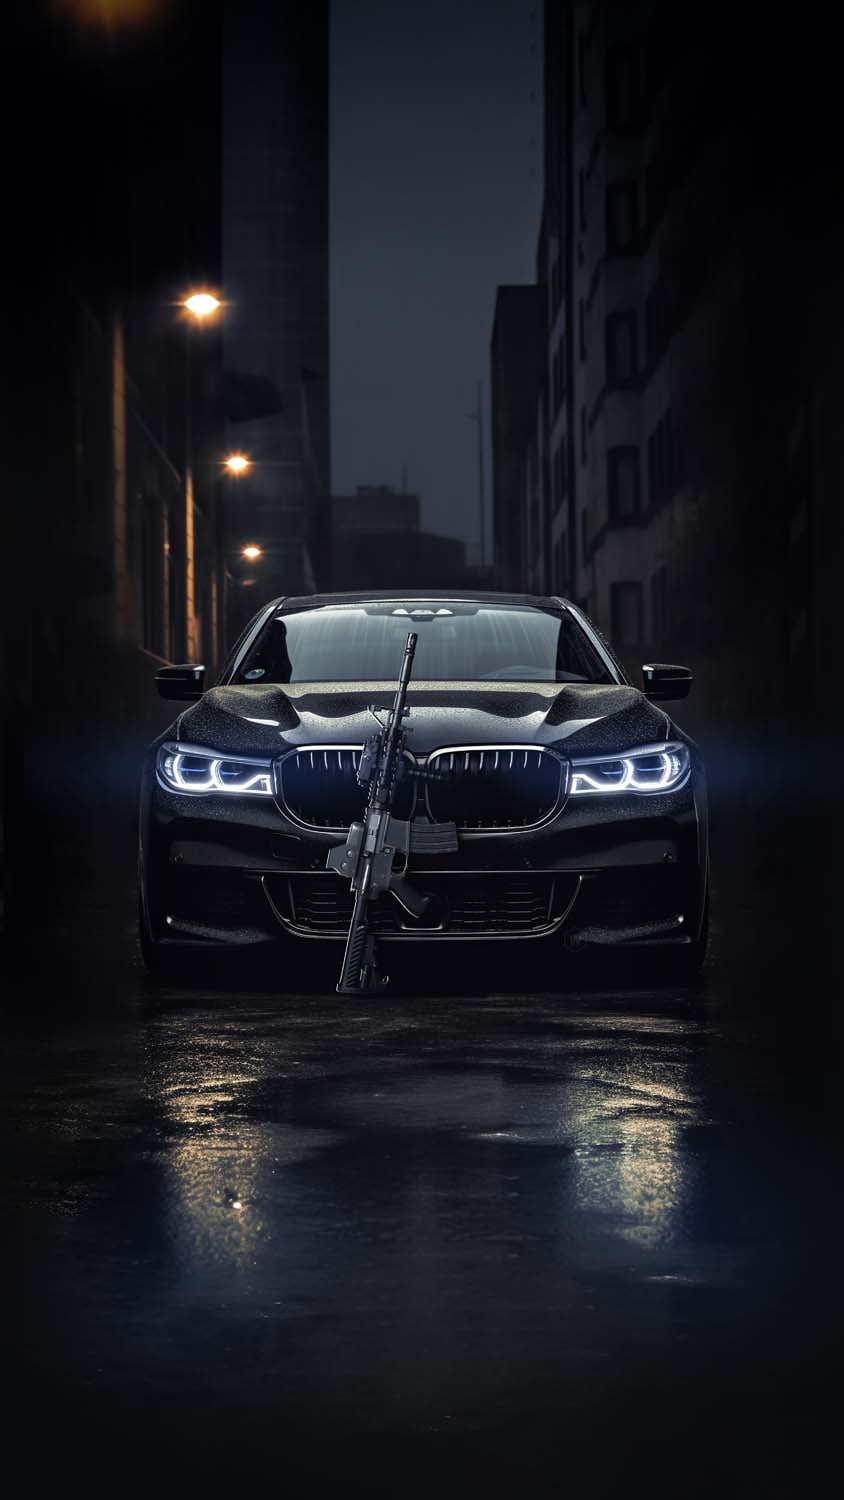 BMW Mafia